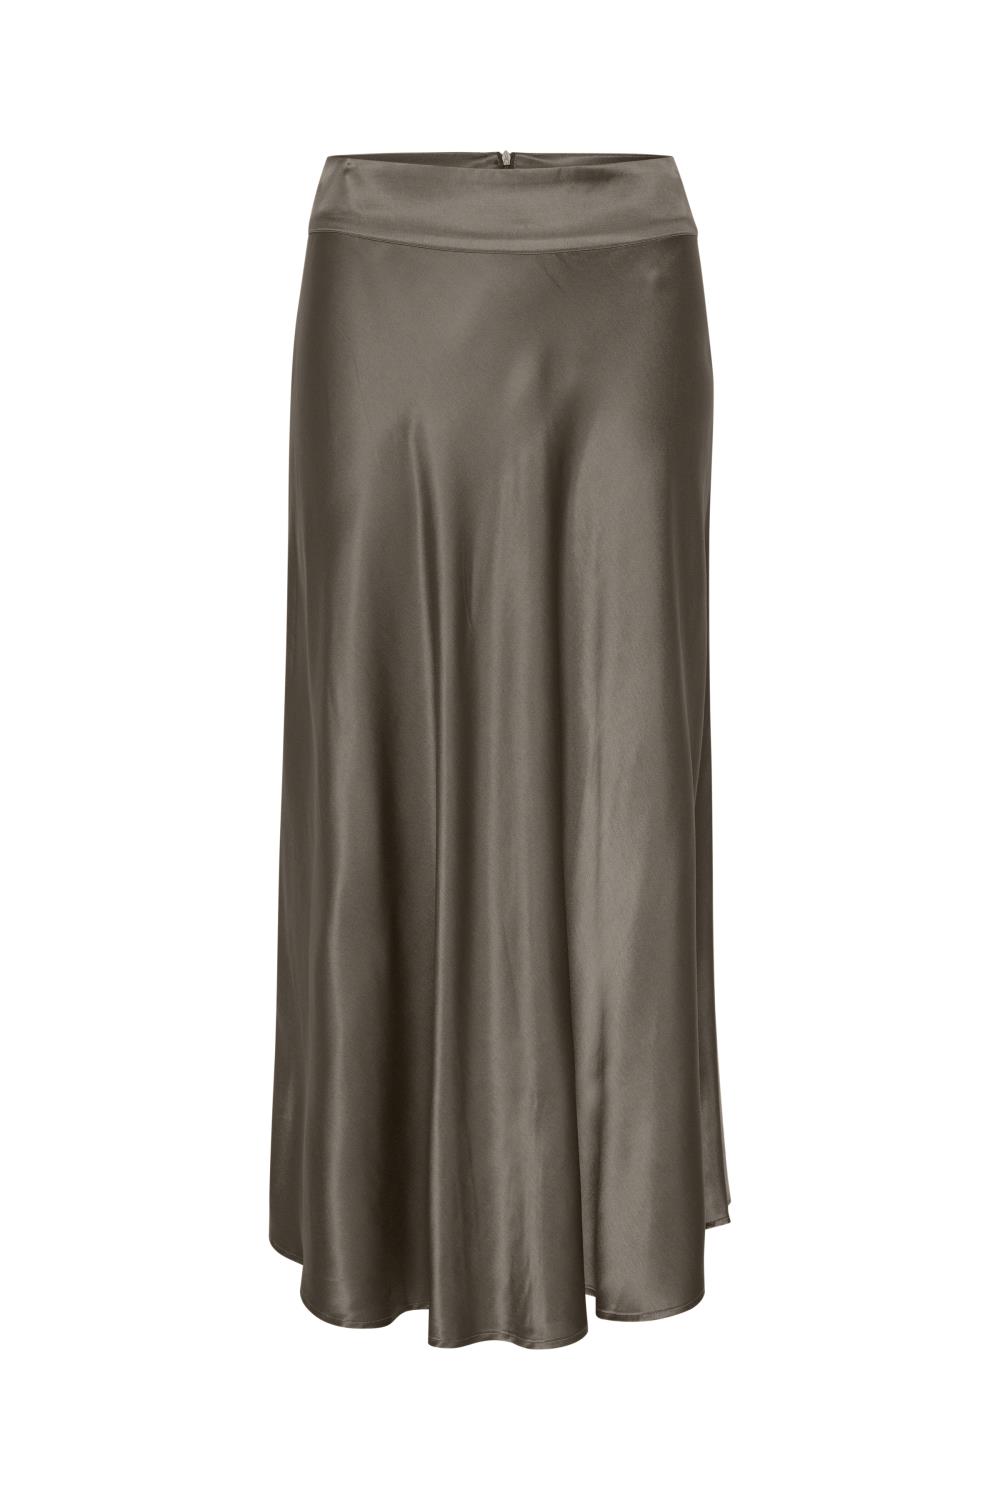 My Essential Wardrobe Estelle Skirt, brun